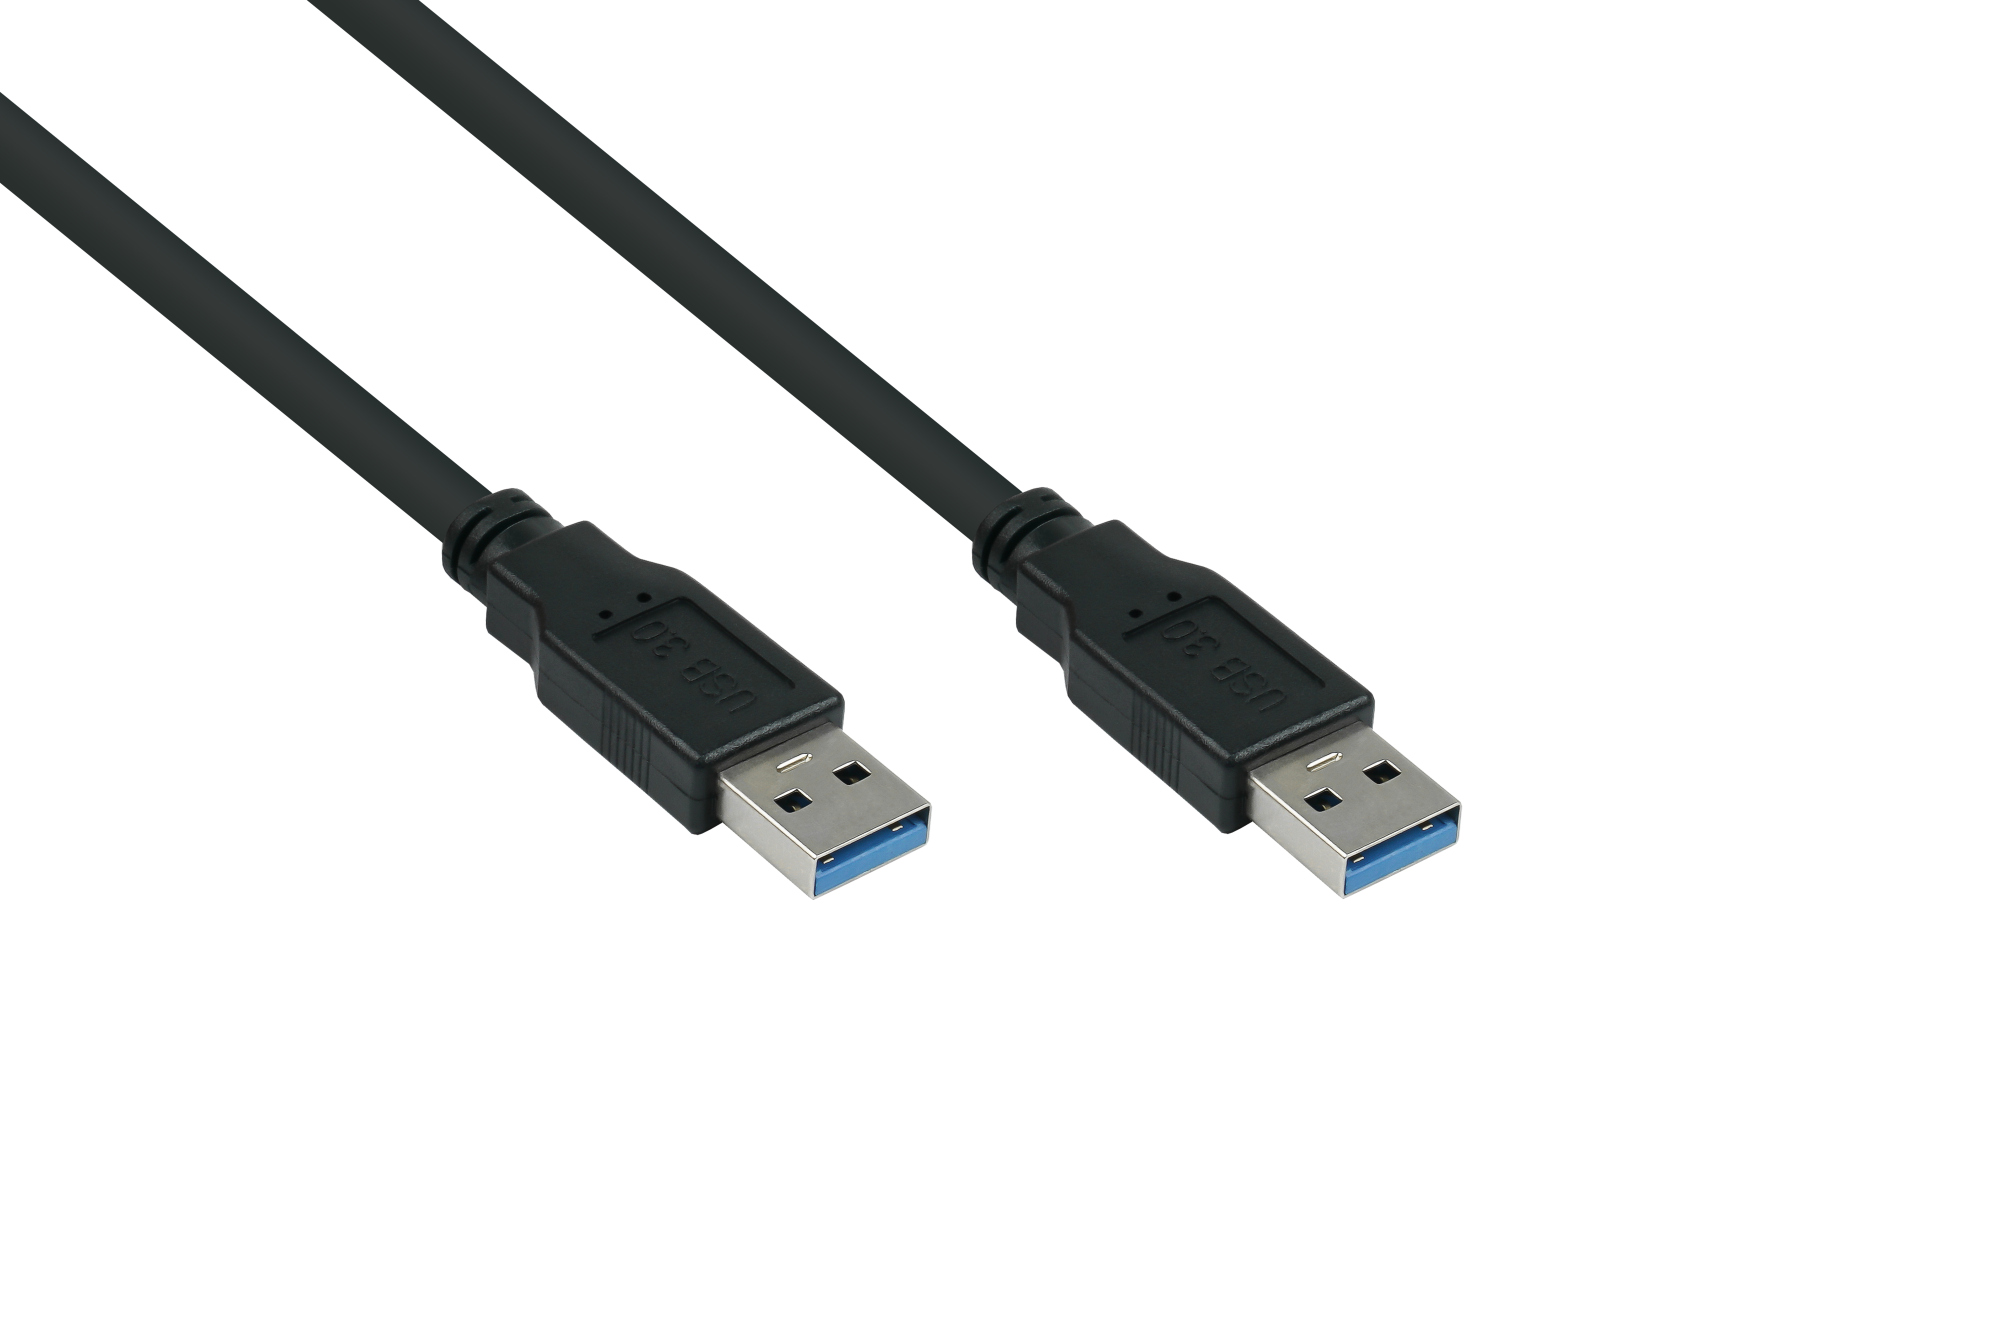 USB 3.0 Kabel Stecker A an Stecker A, Premium, AWG28 / AWG24, UL, KUPFER, schwarz, 1m